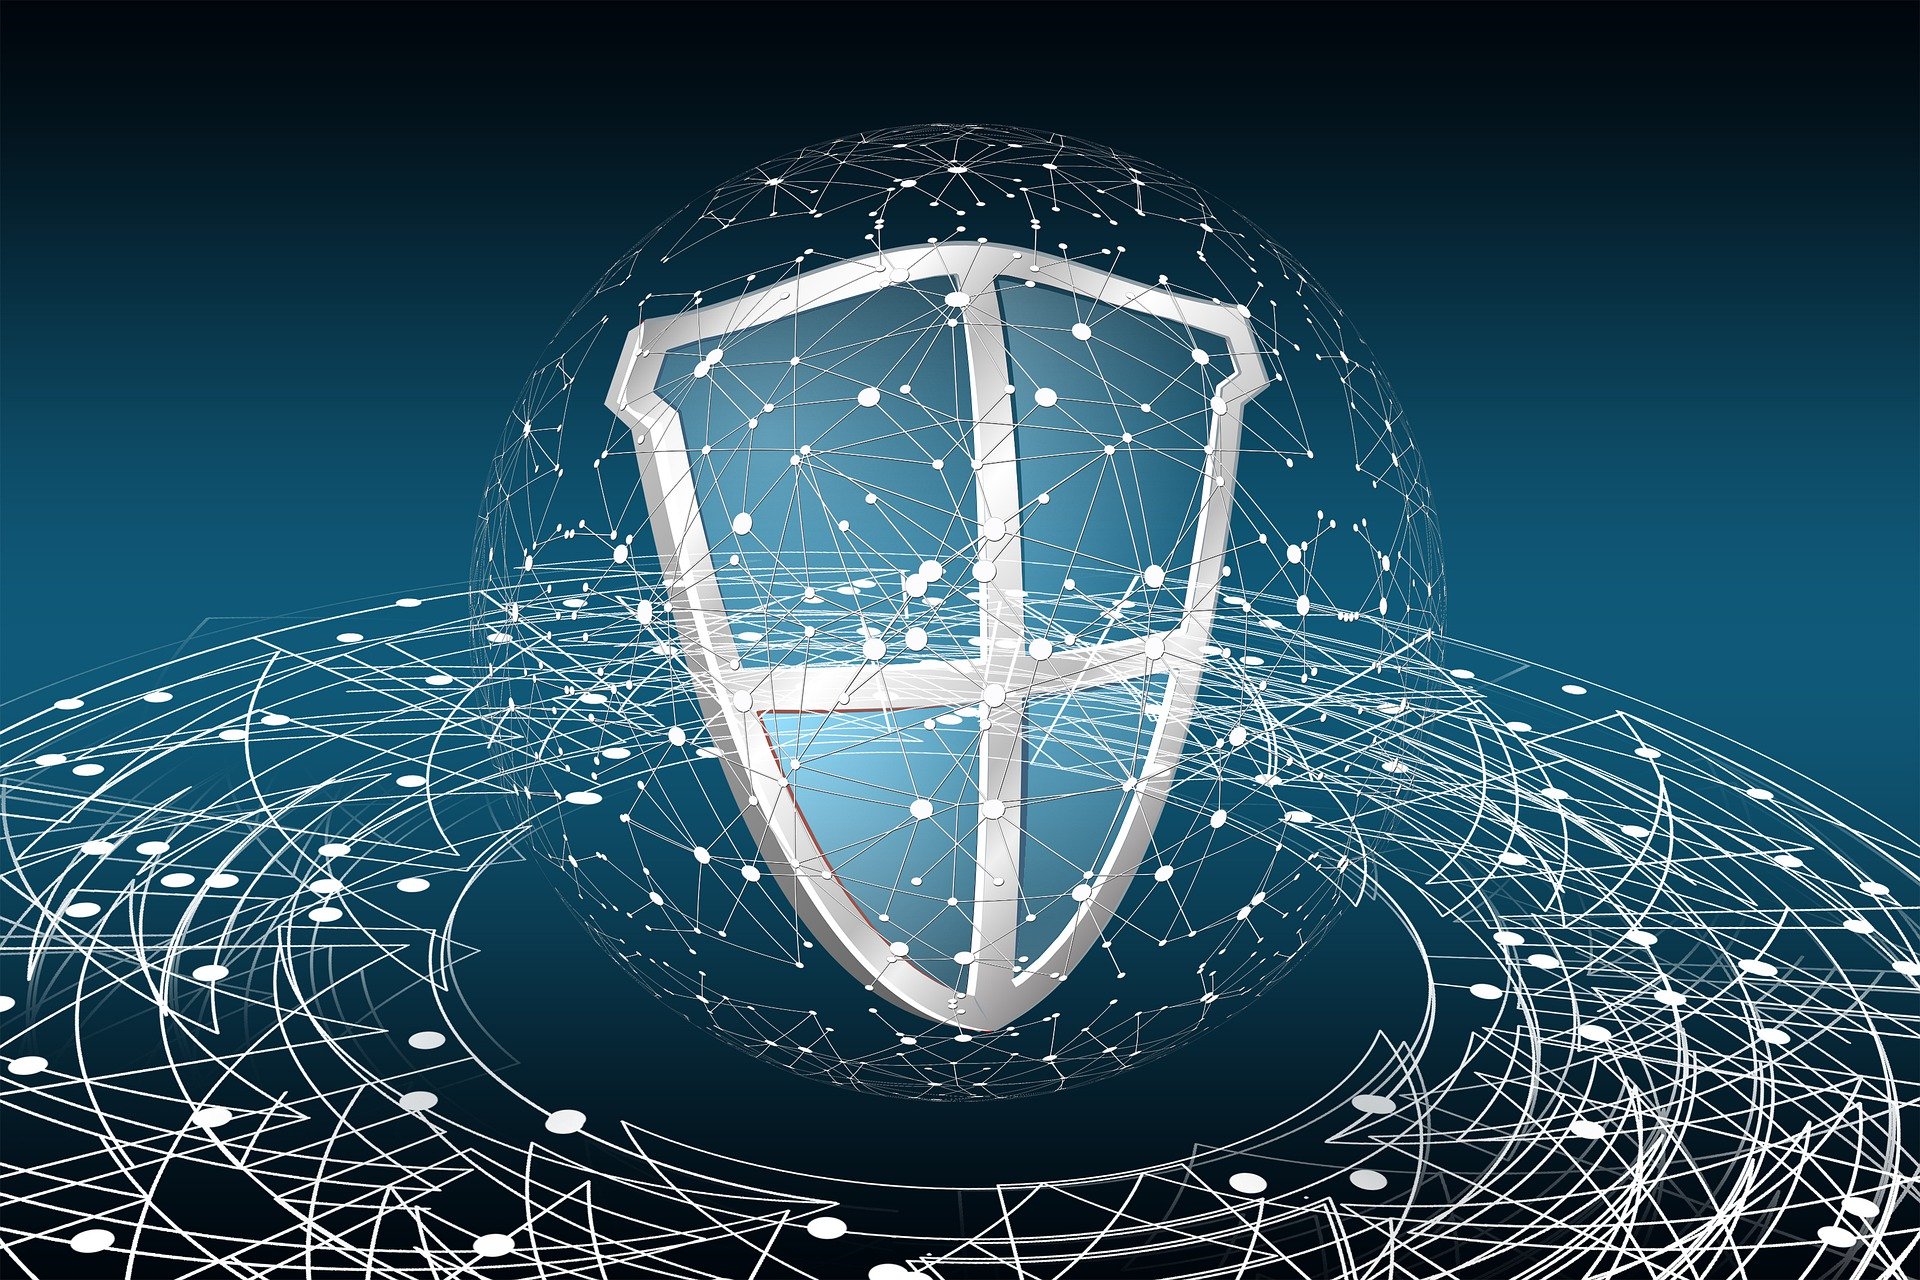 Richtlinie zur Förderung von Forschungsvorhaben für ein „Forschungsnetzwerk Anonymisierung für eine sichere Datennutzung“ im Rahmen des Forschungsrahmenprogramms der Bundesregierung zur IT-Sicherheit „Digital. Sicher. Souverän.“